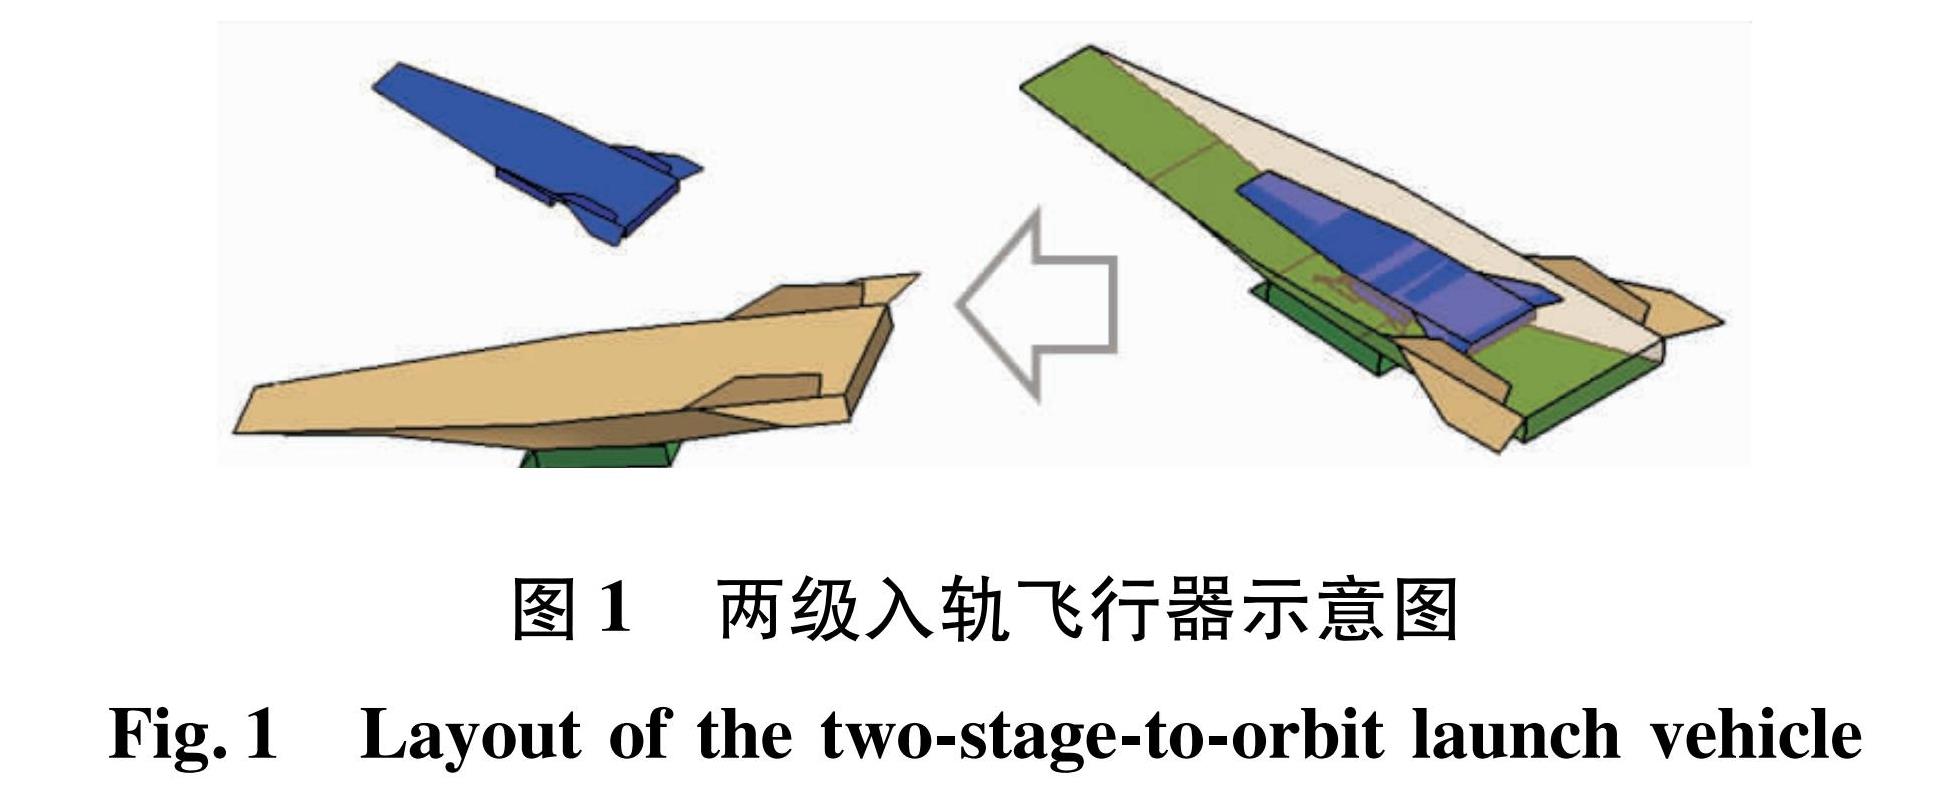 图1 两级入轨飞行器示意图<br/>Fig.1 Layout of the two-stage-to-orbit launch vehicle